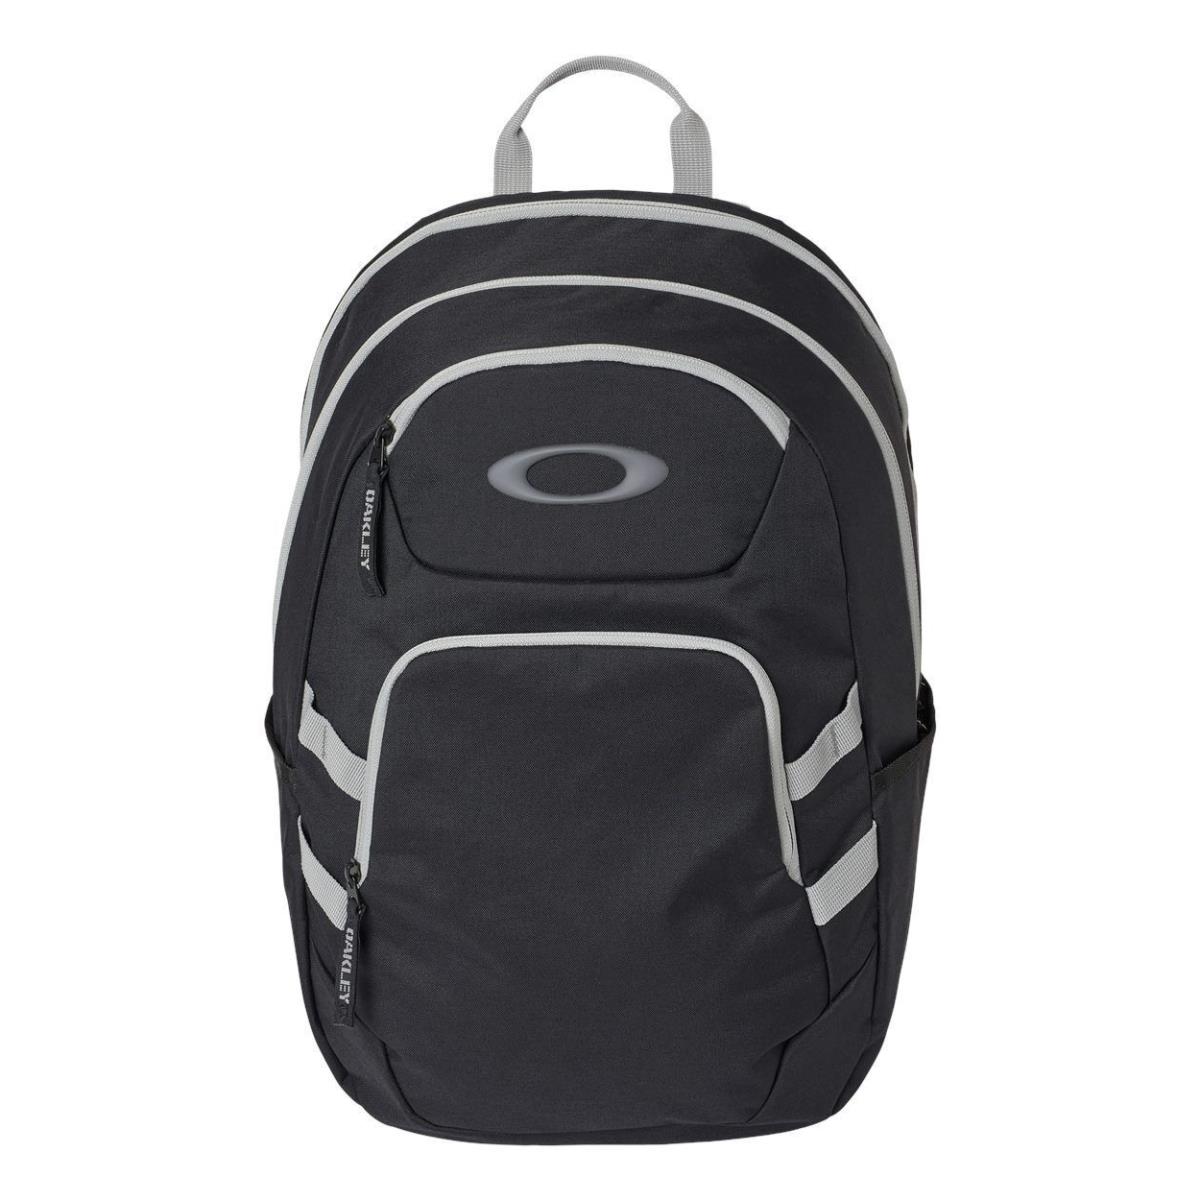 Oakley Gearbox 24L Backpack - FOS901246 Blackout